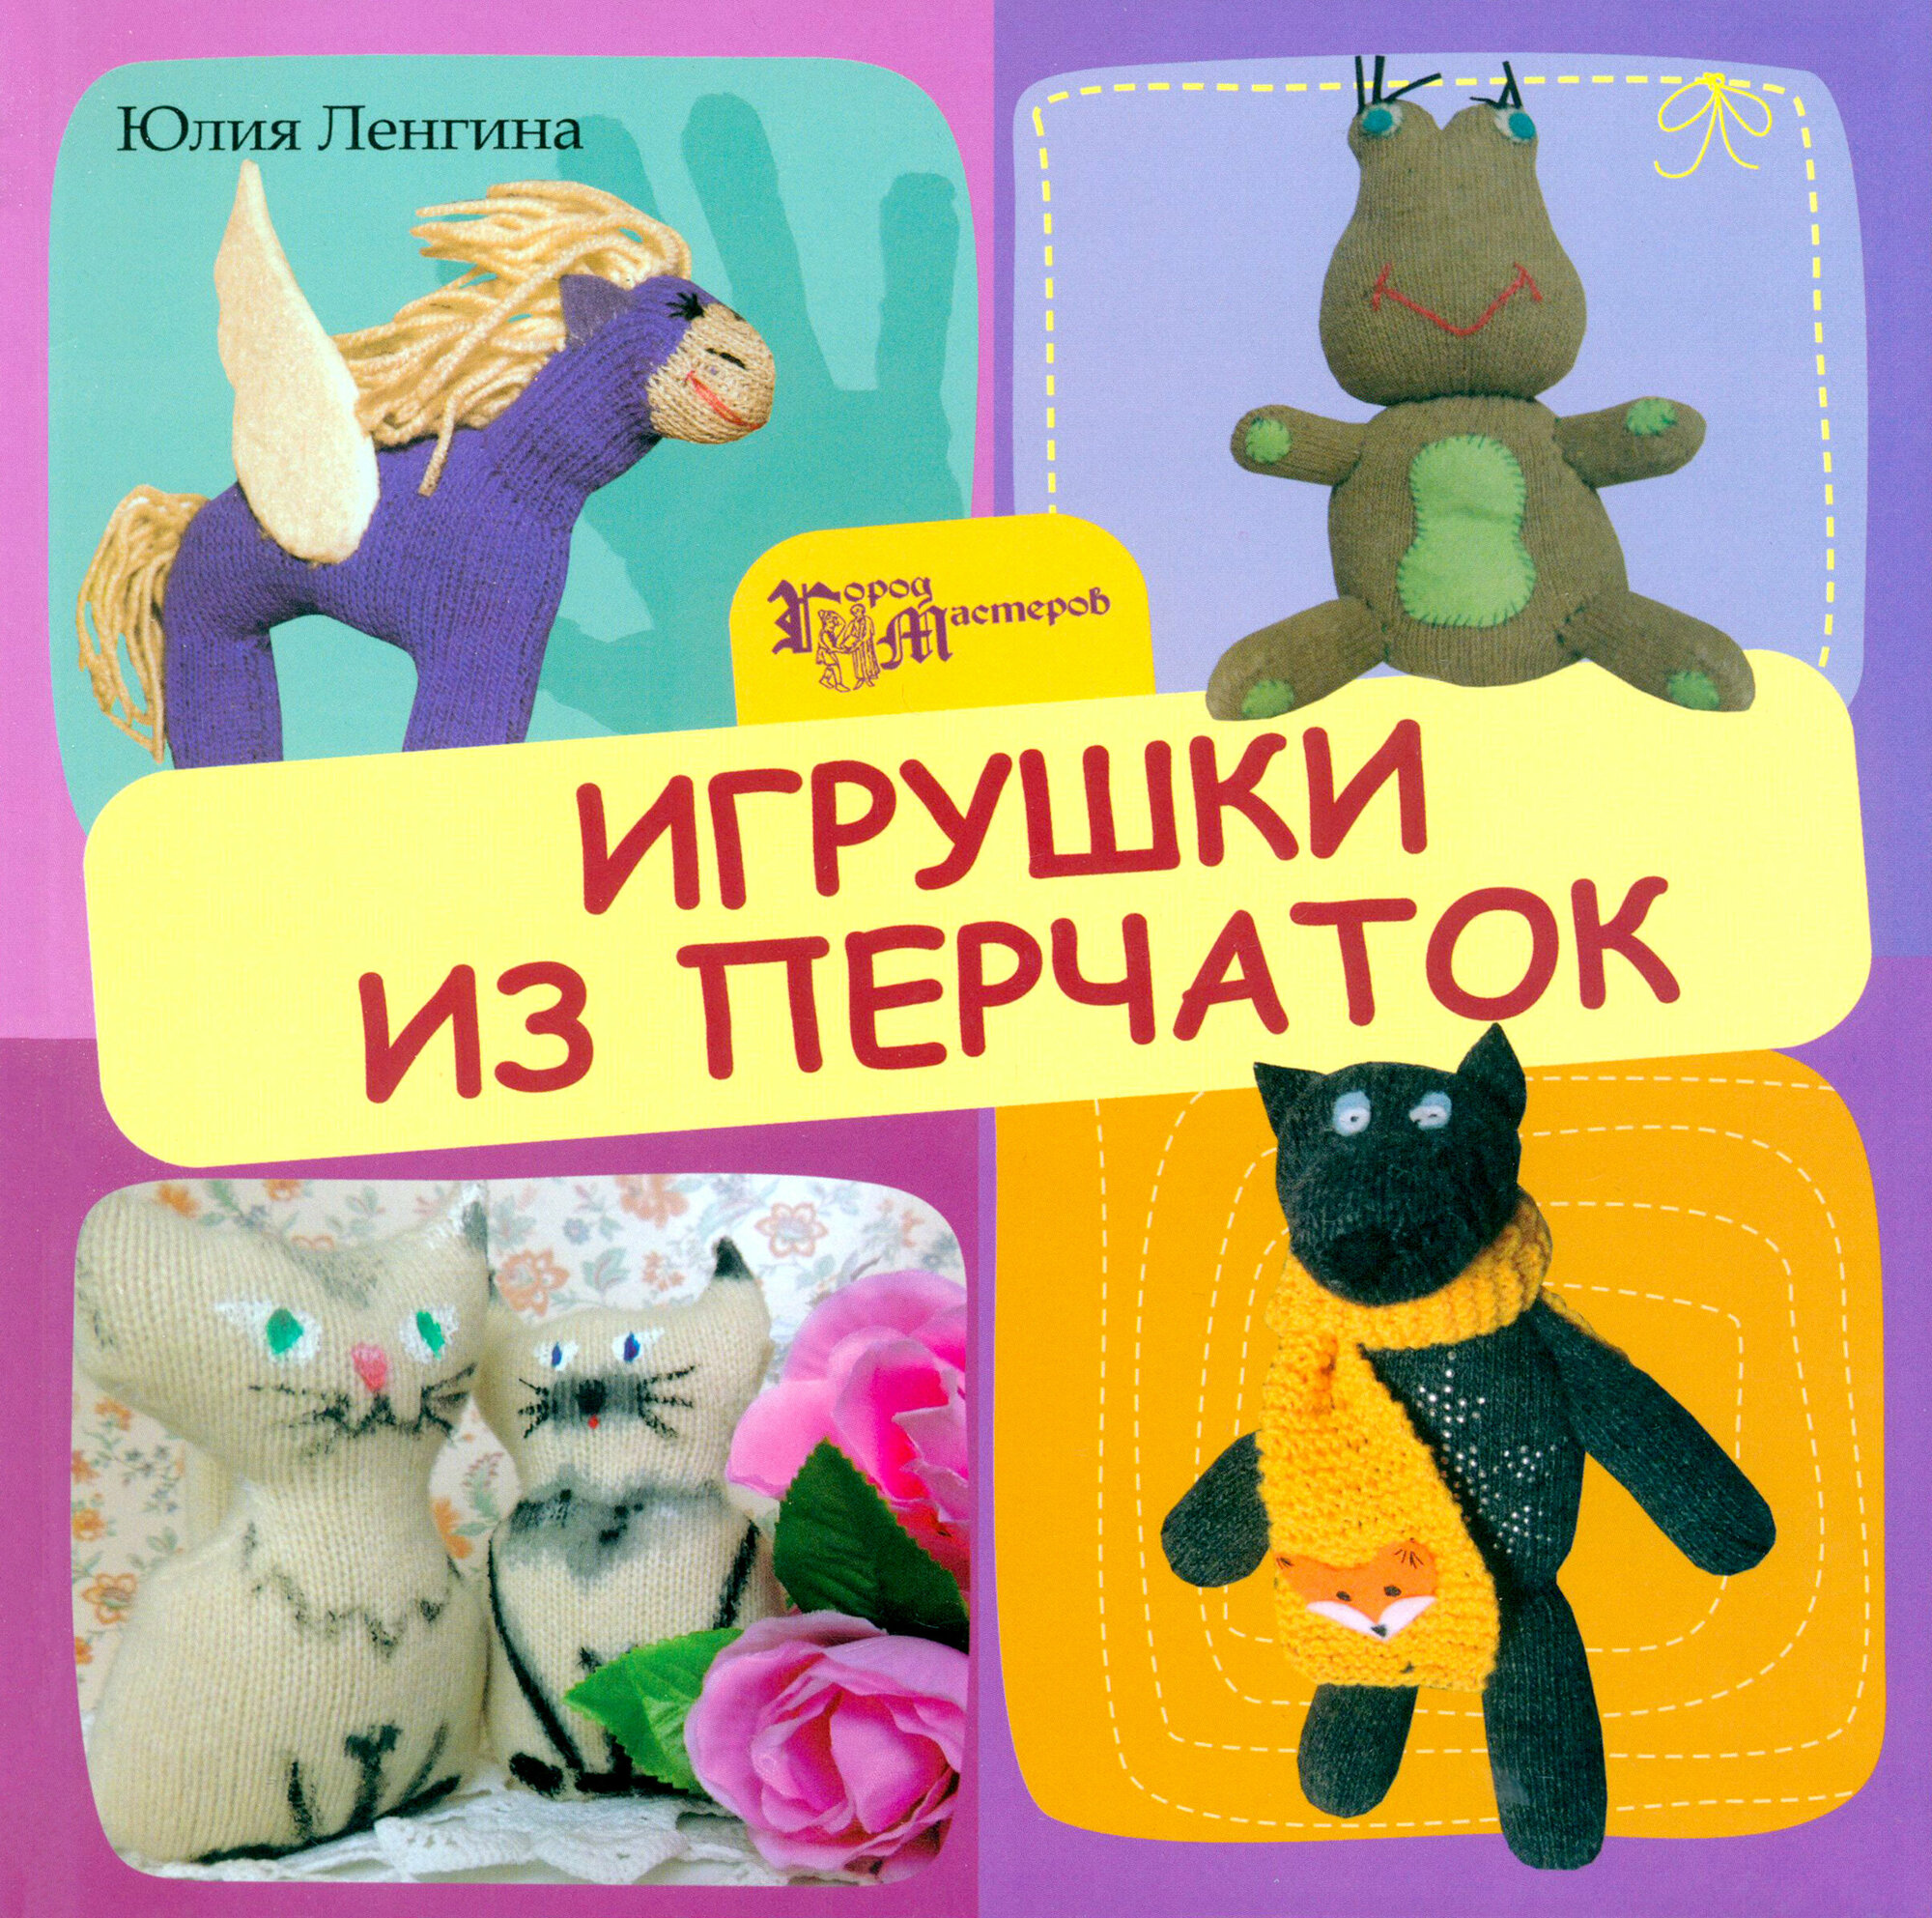 Игрушки из перчаток (Ленгина Юлия Константиновна) - фото №3